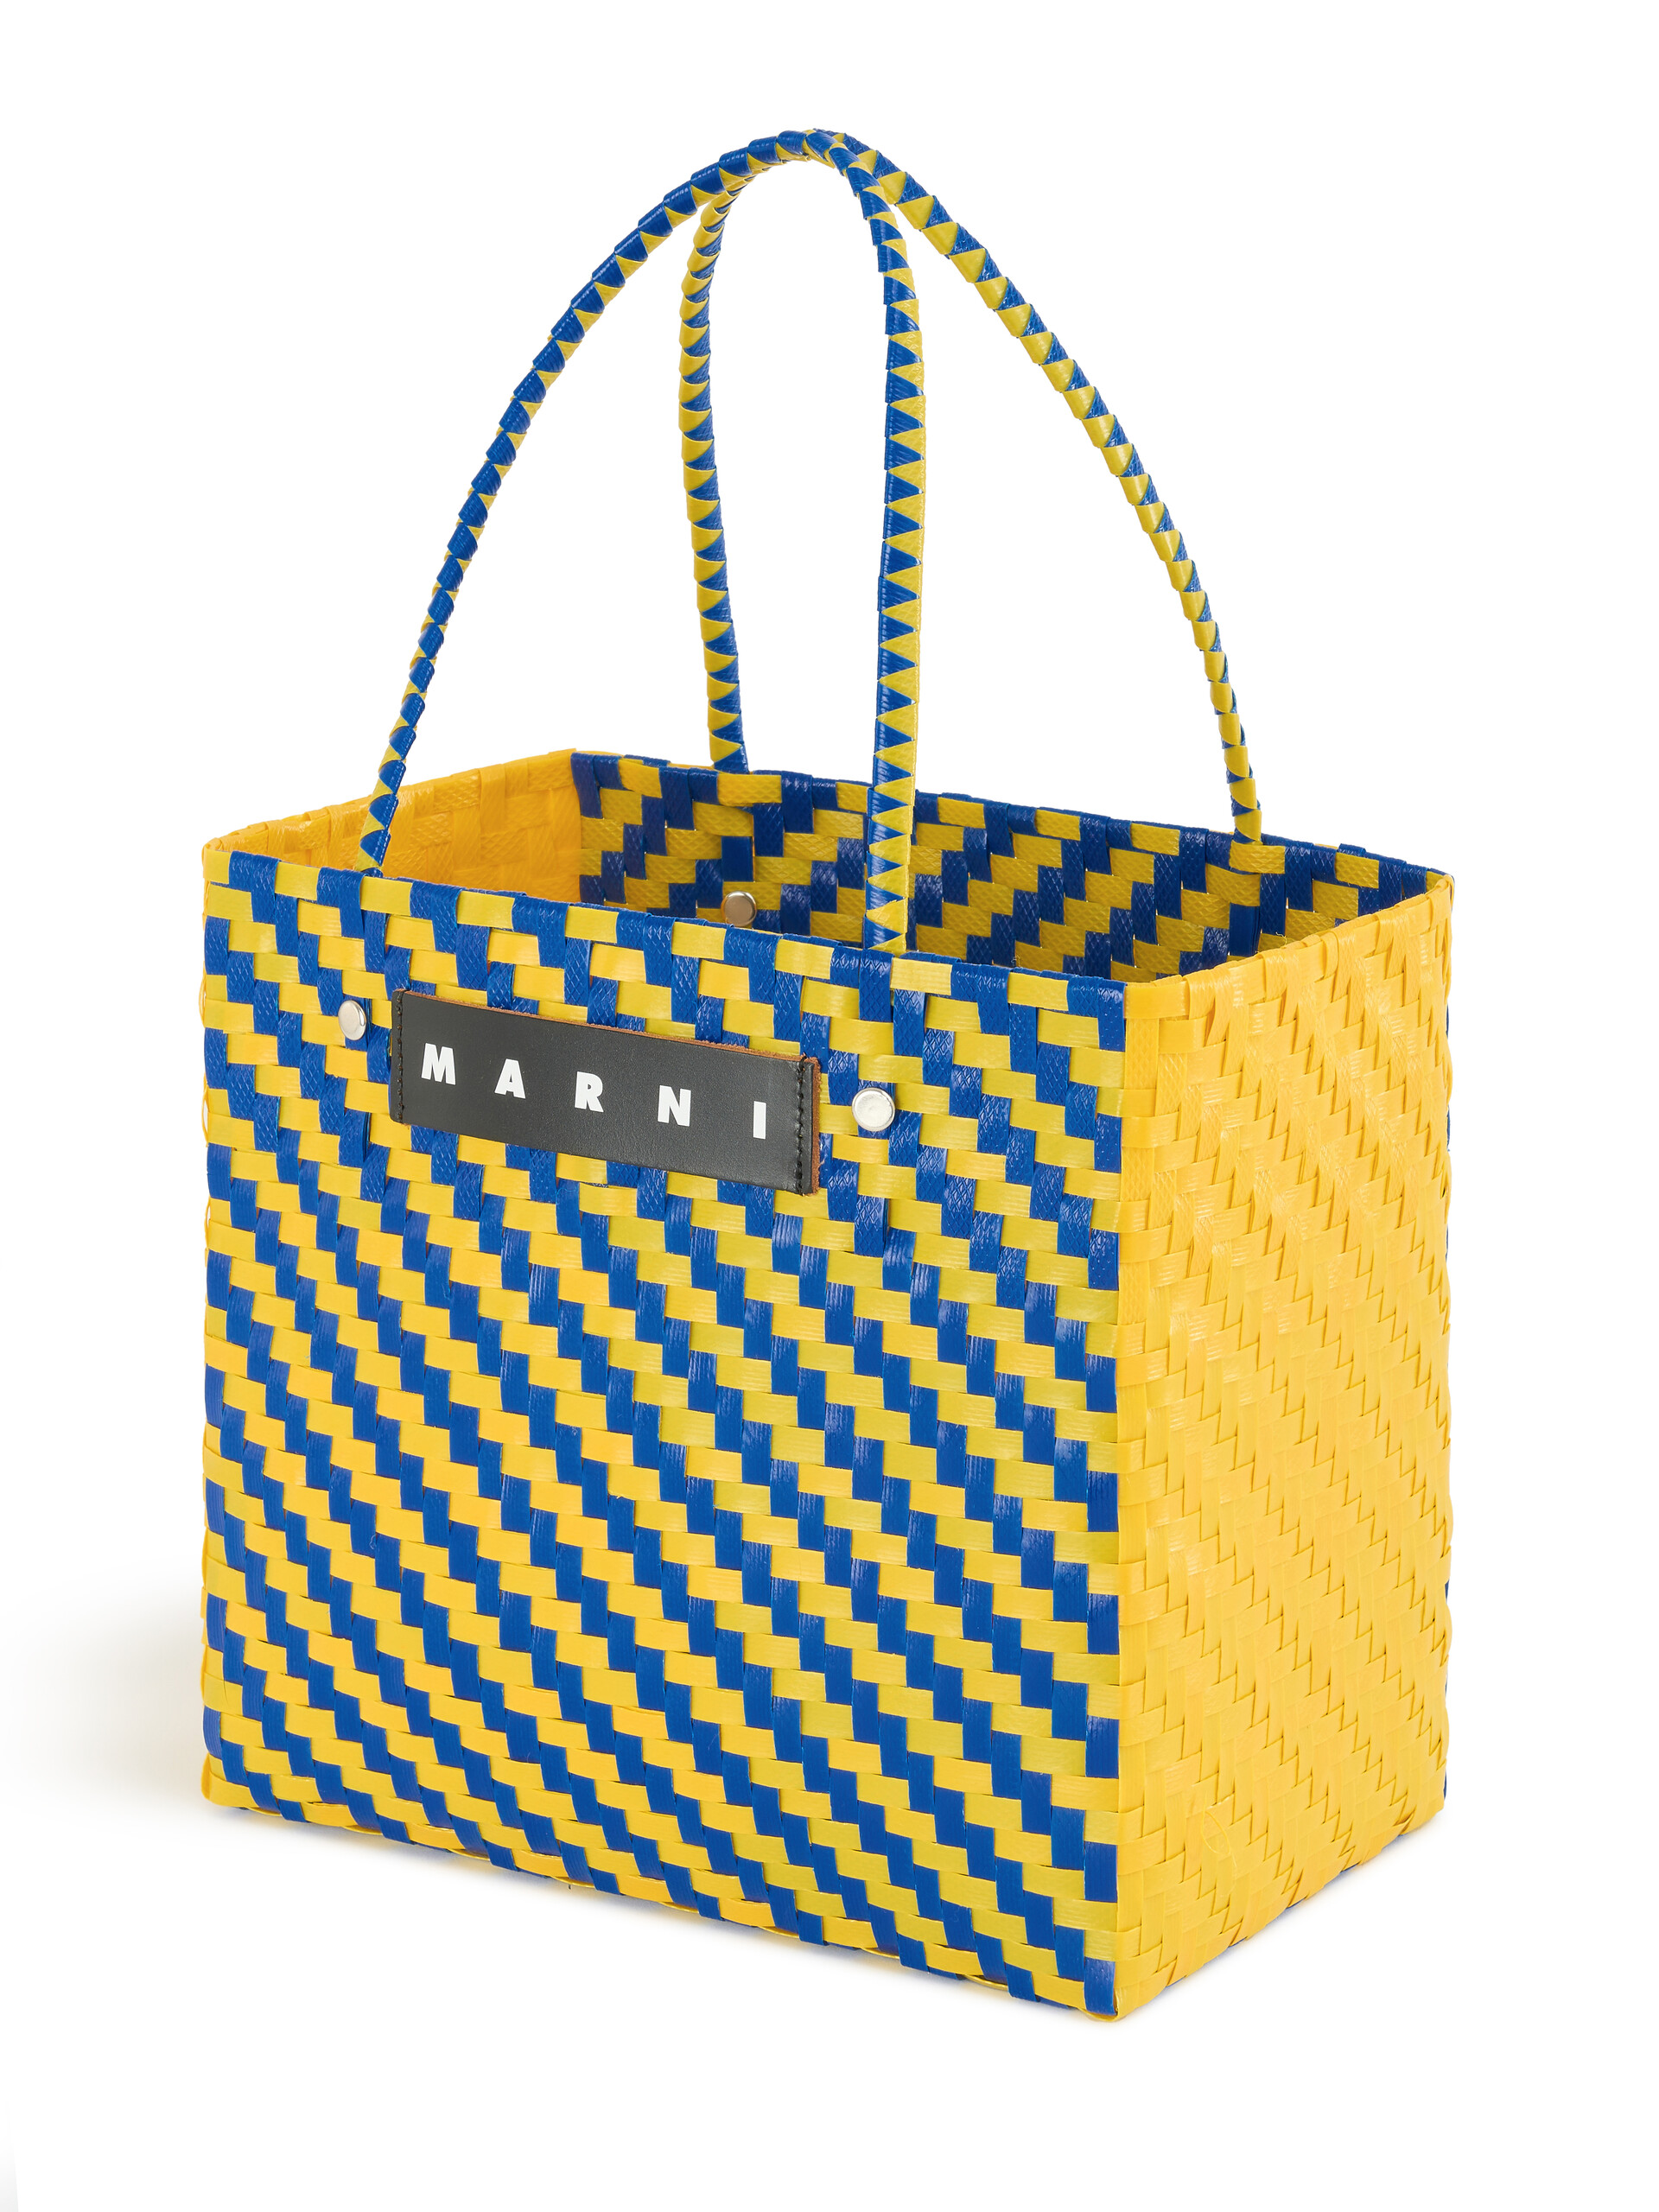 Minibolso MARNI MARKET BASKET con zigzag azul y amarillo - Bolsos shopper - Image 4